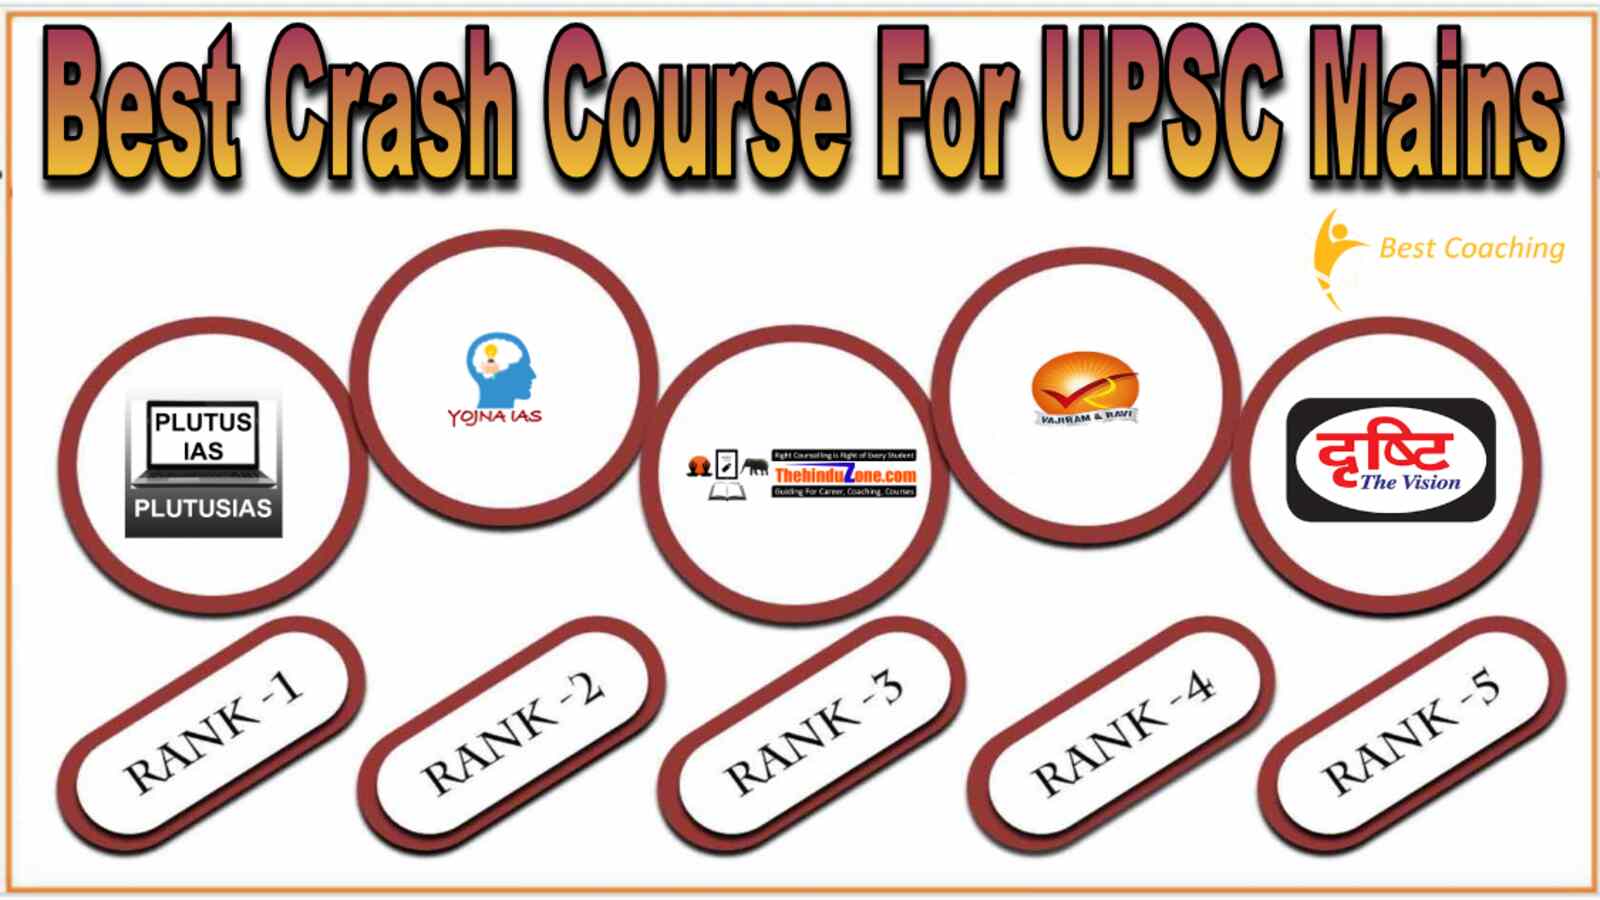 Best Crash Course for UPSC Mains